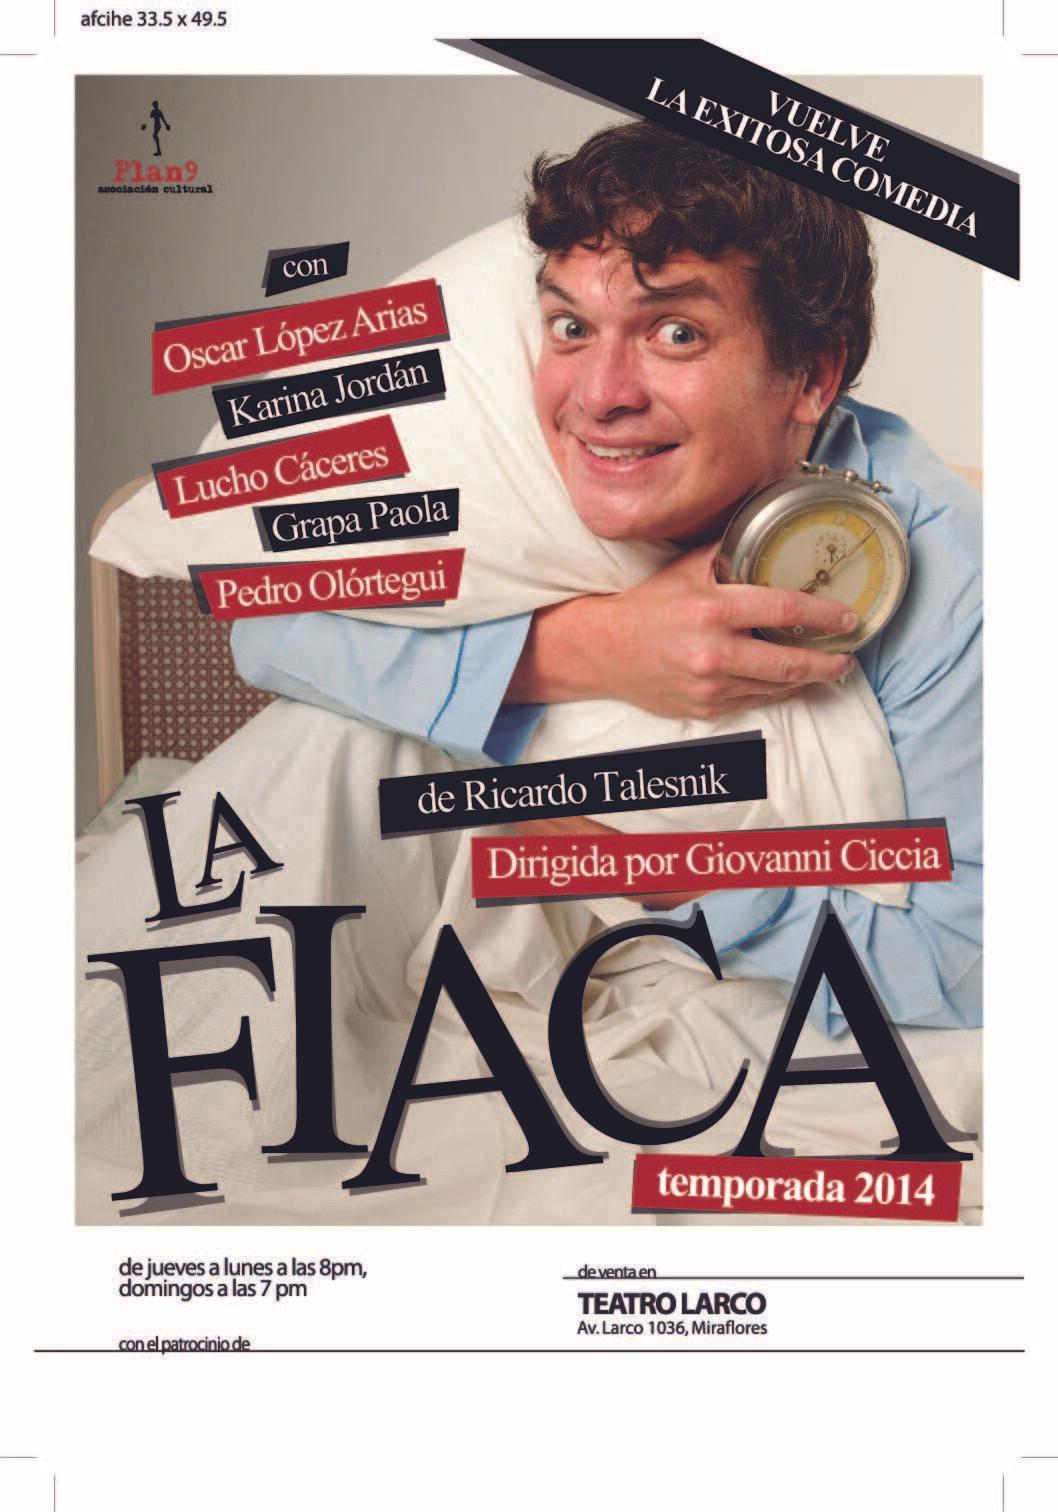 La Fiaca en El Teatro Larco 2014 - SDT